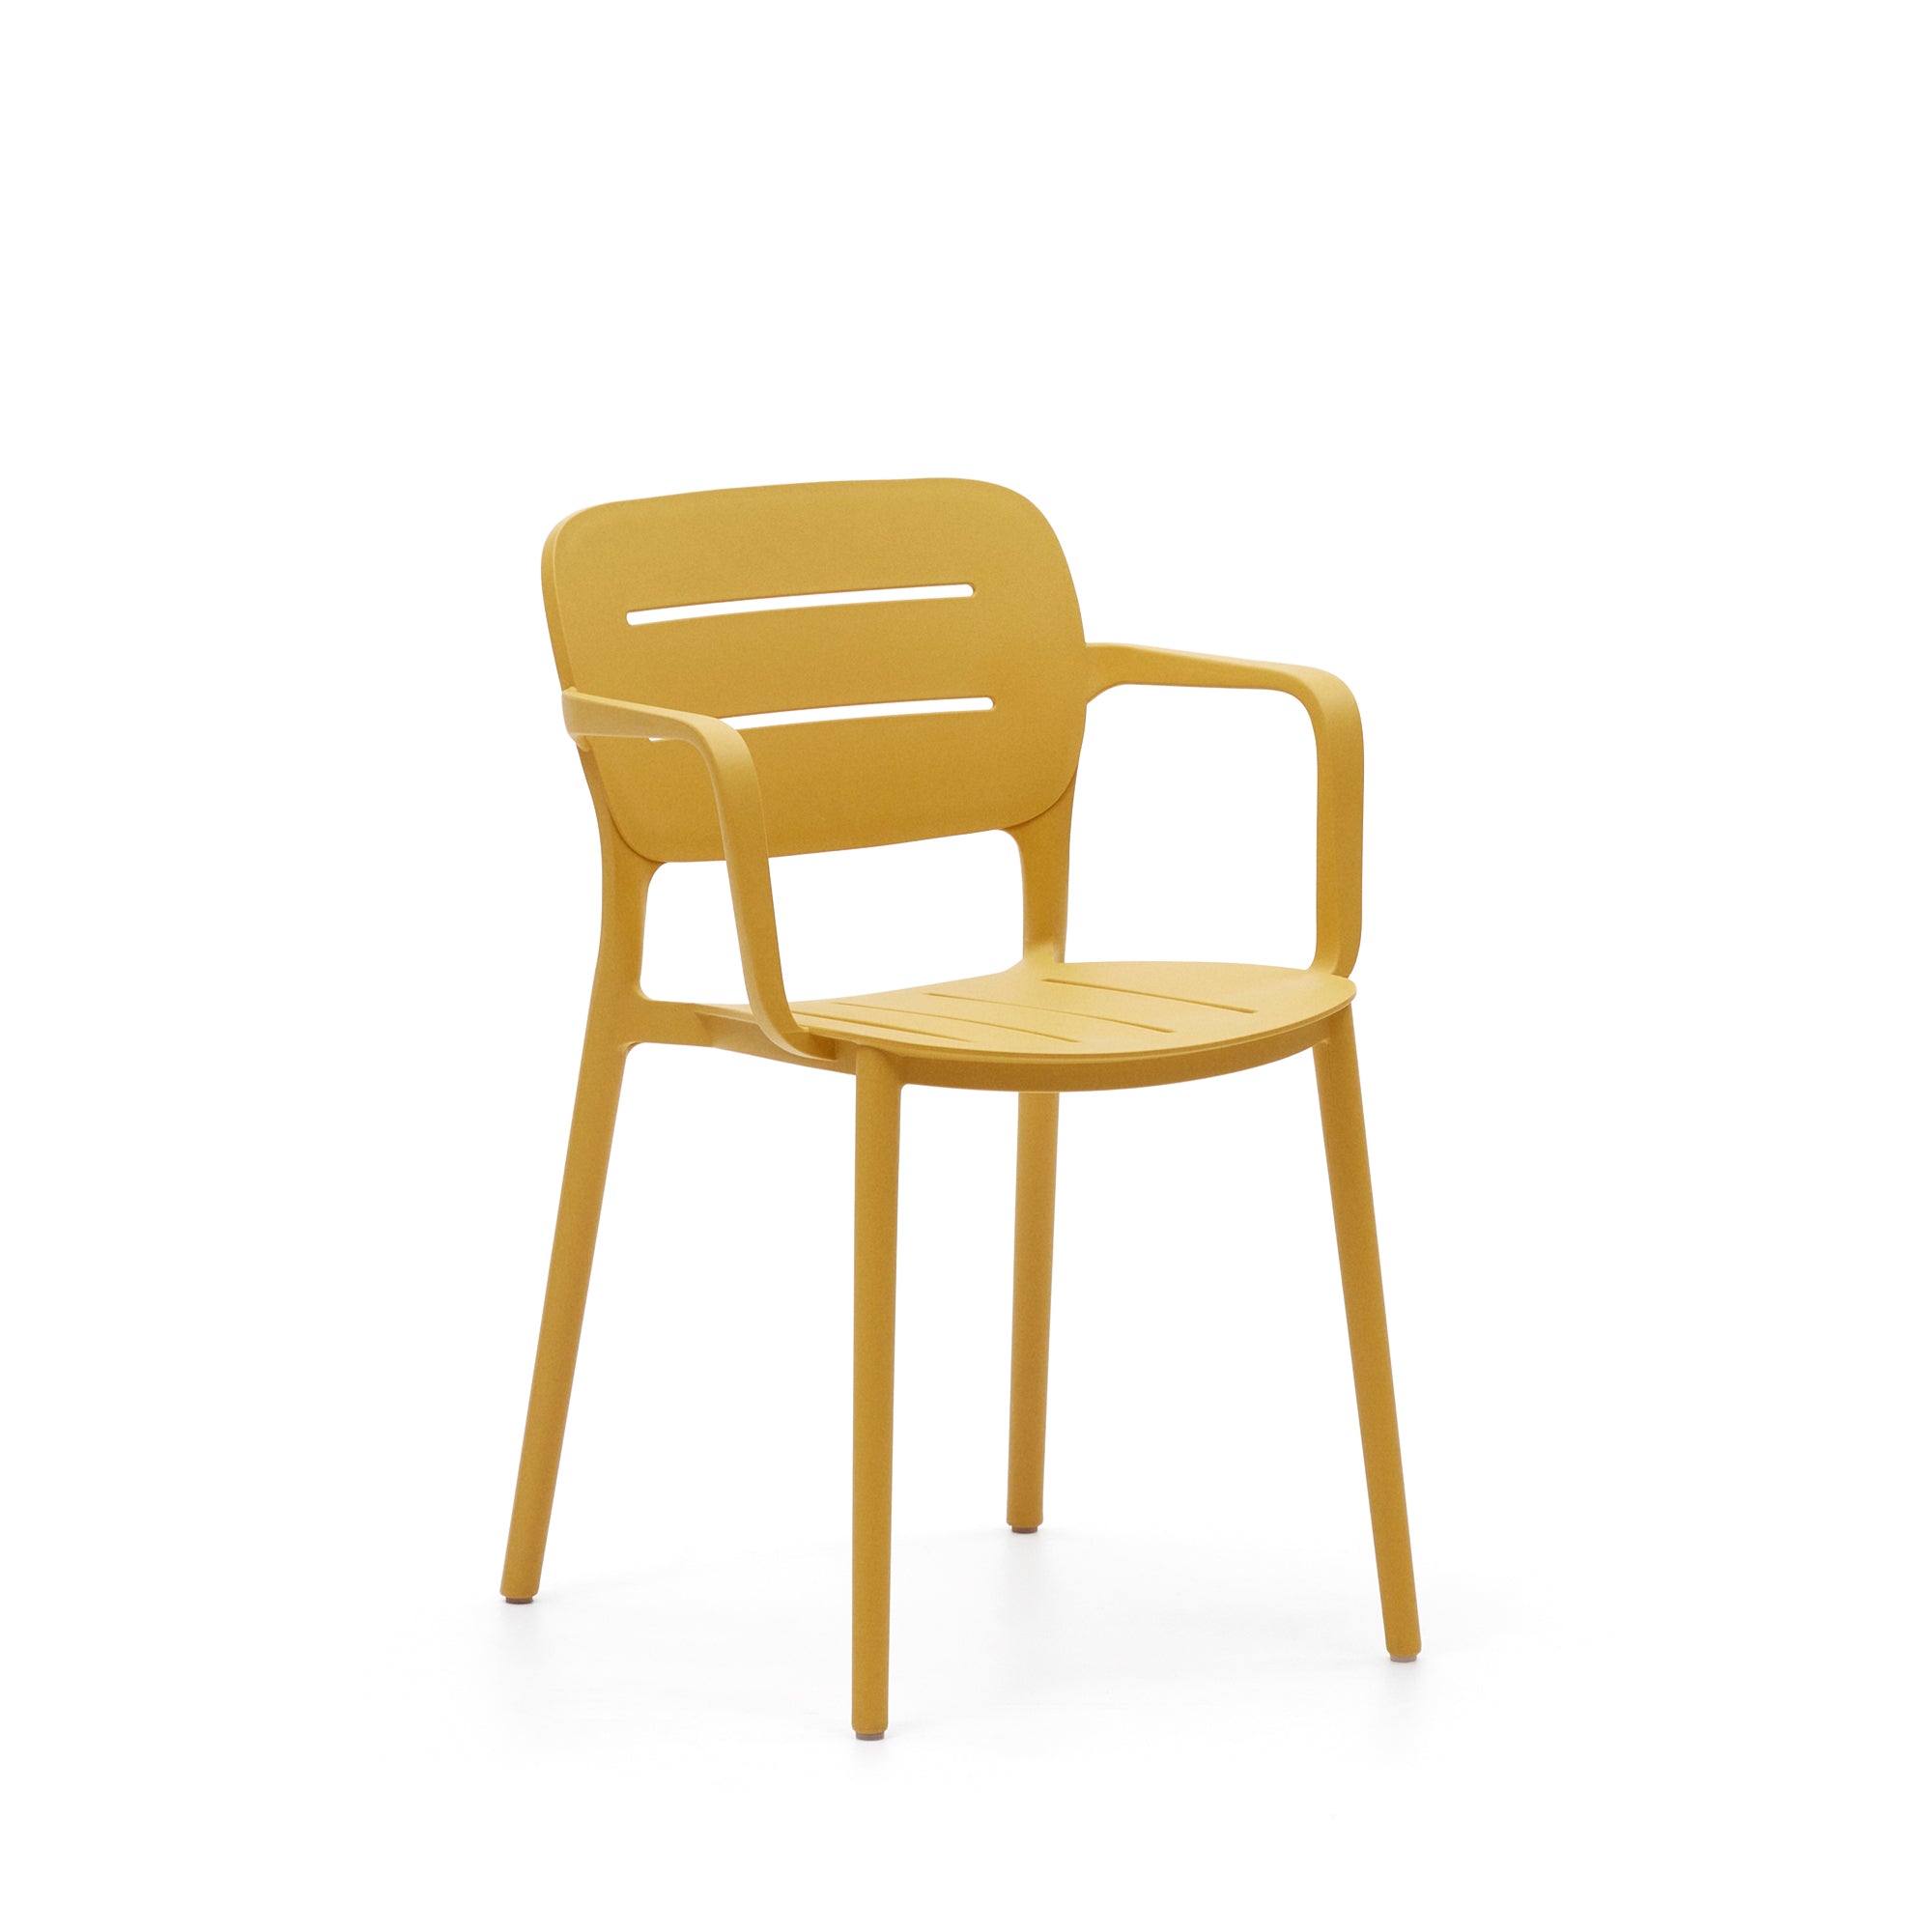 Morella egymásba rakható kültéri szék mustár színben